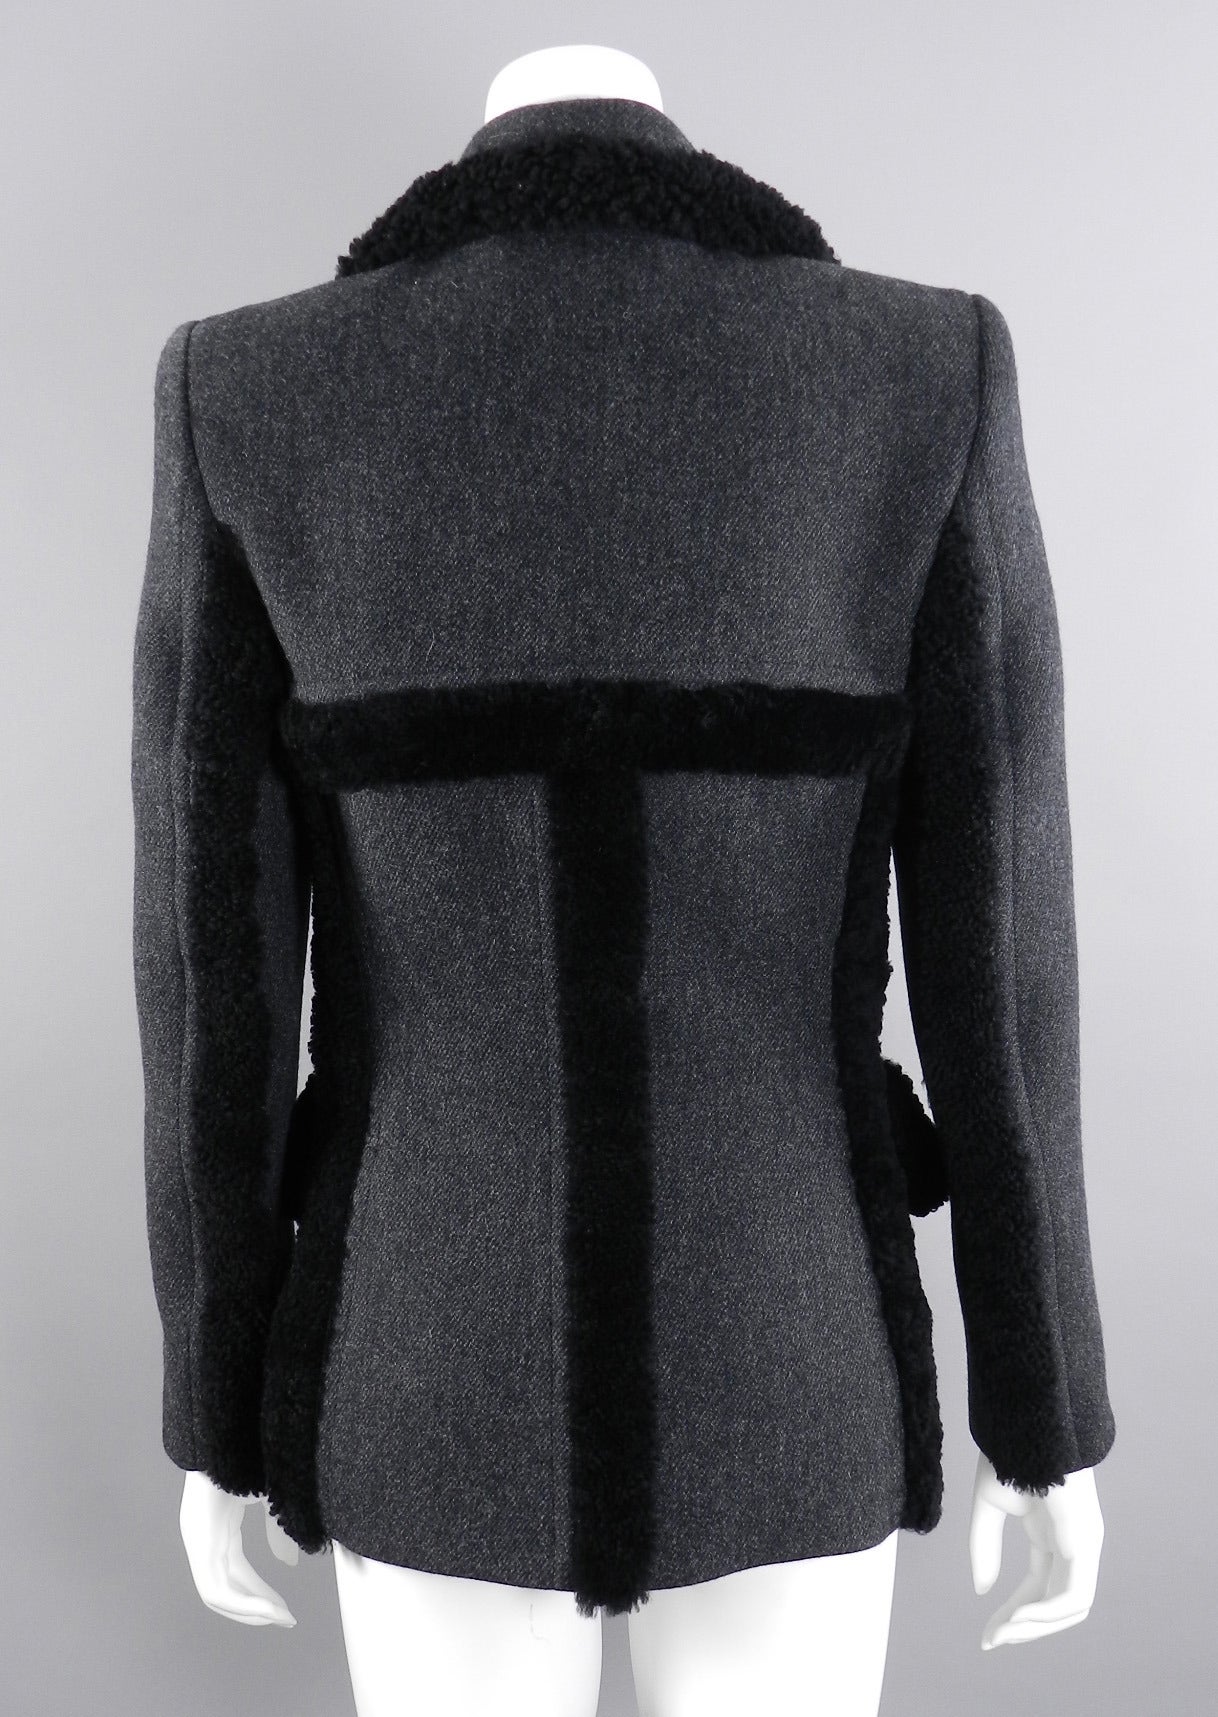 Prada Fall 2014 Grey Wool Runway Coat with Shearling Trim 1